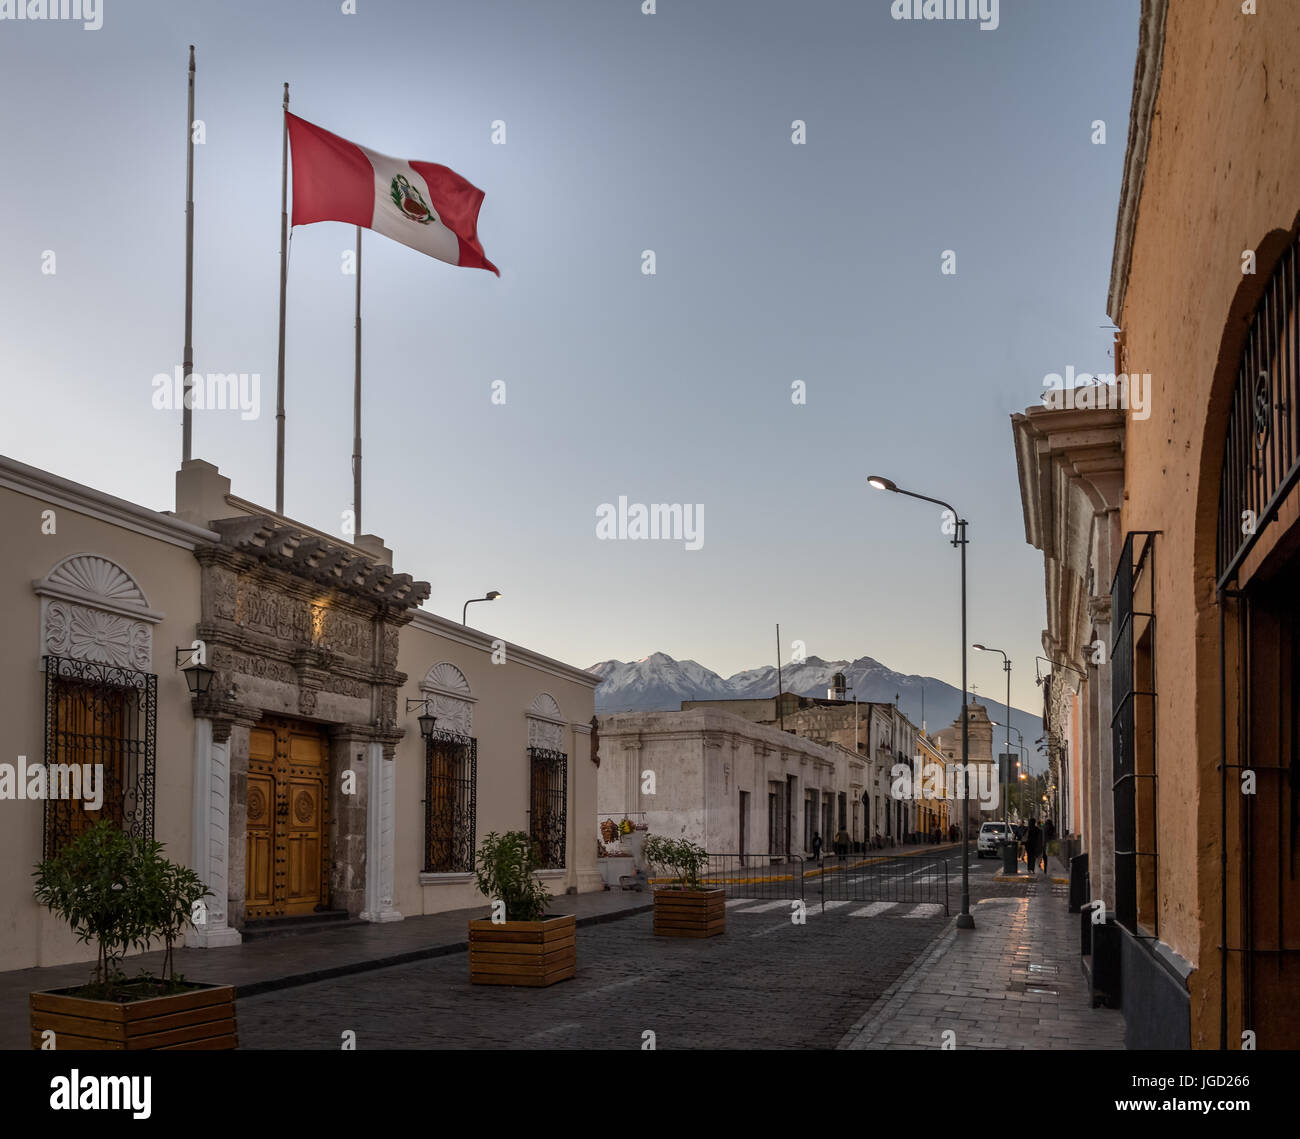 Straße von Arequipa und peruanische Flagge - Arequipa, Peru Stockfoto